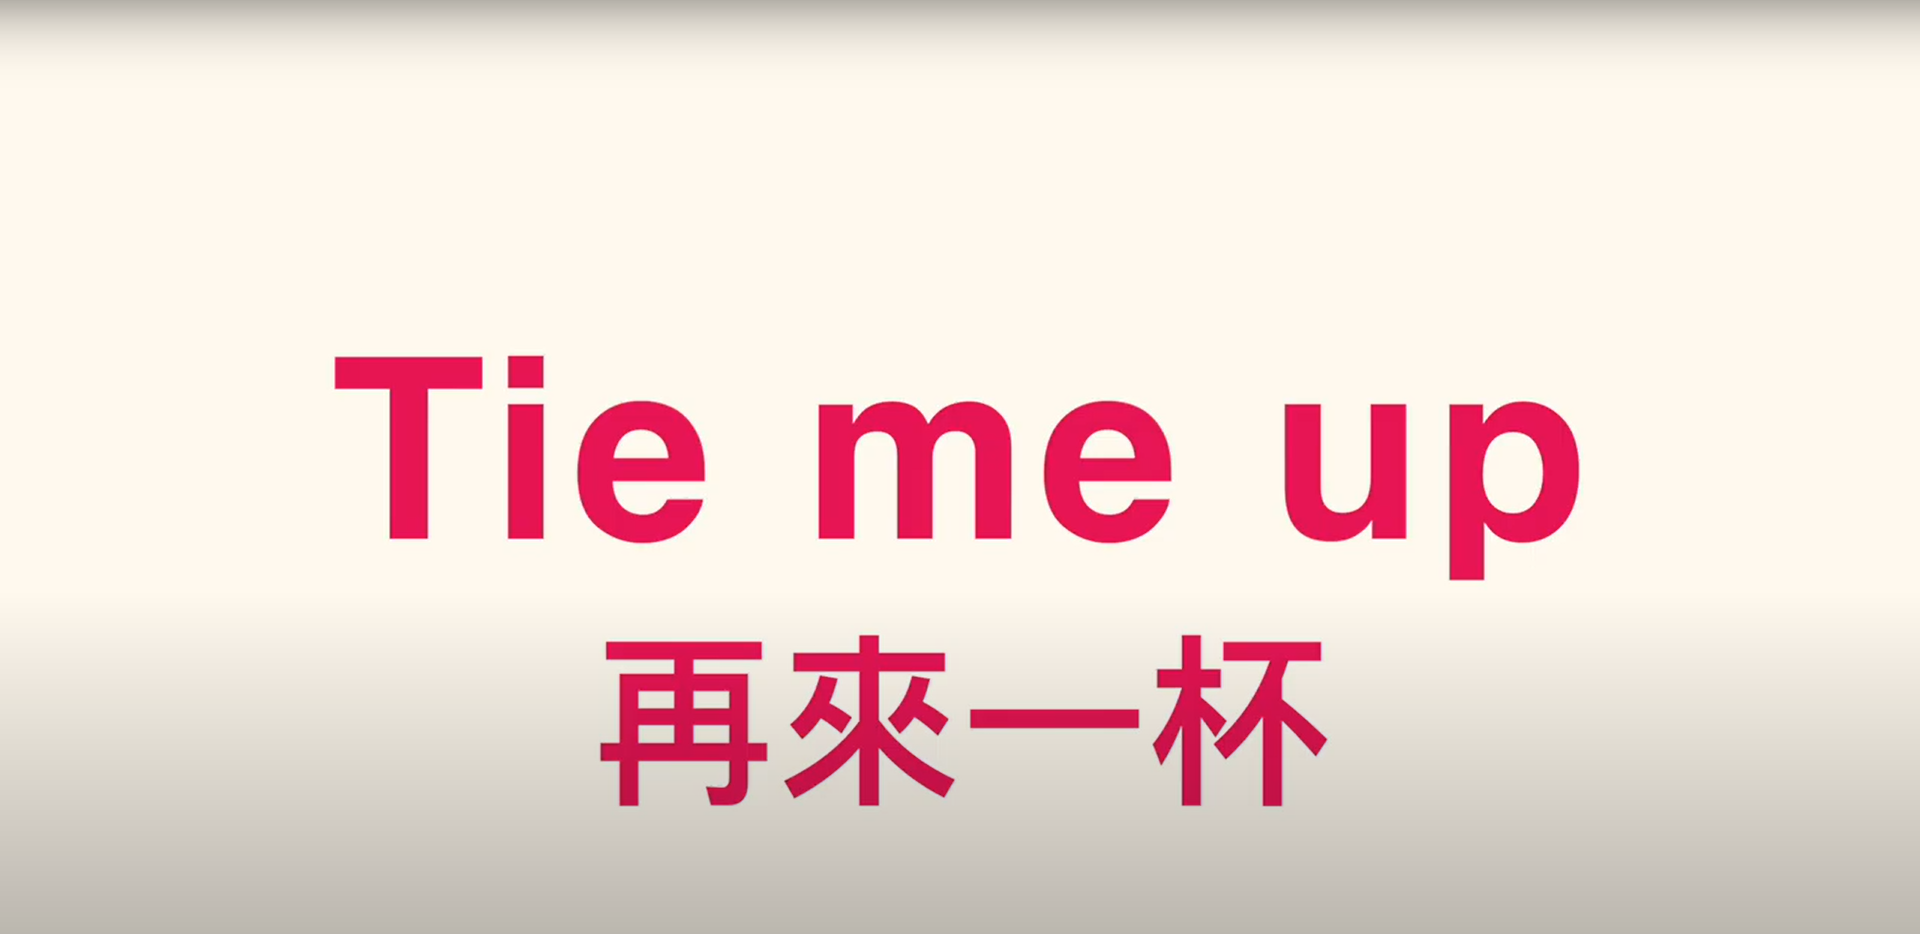 2020全球華人教育遊戲設計大賞佳作-Tie me up! 再來一杯!(另開新視窗)